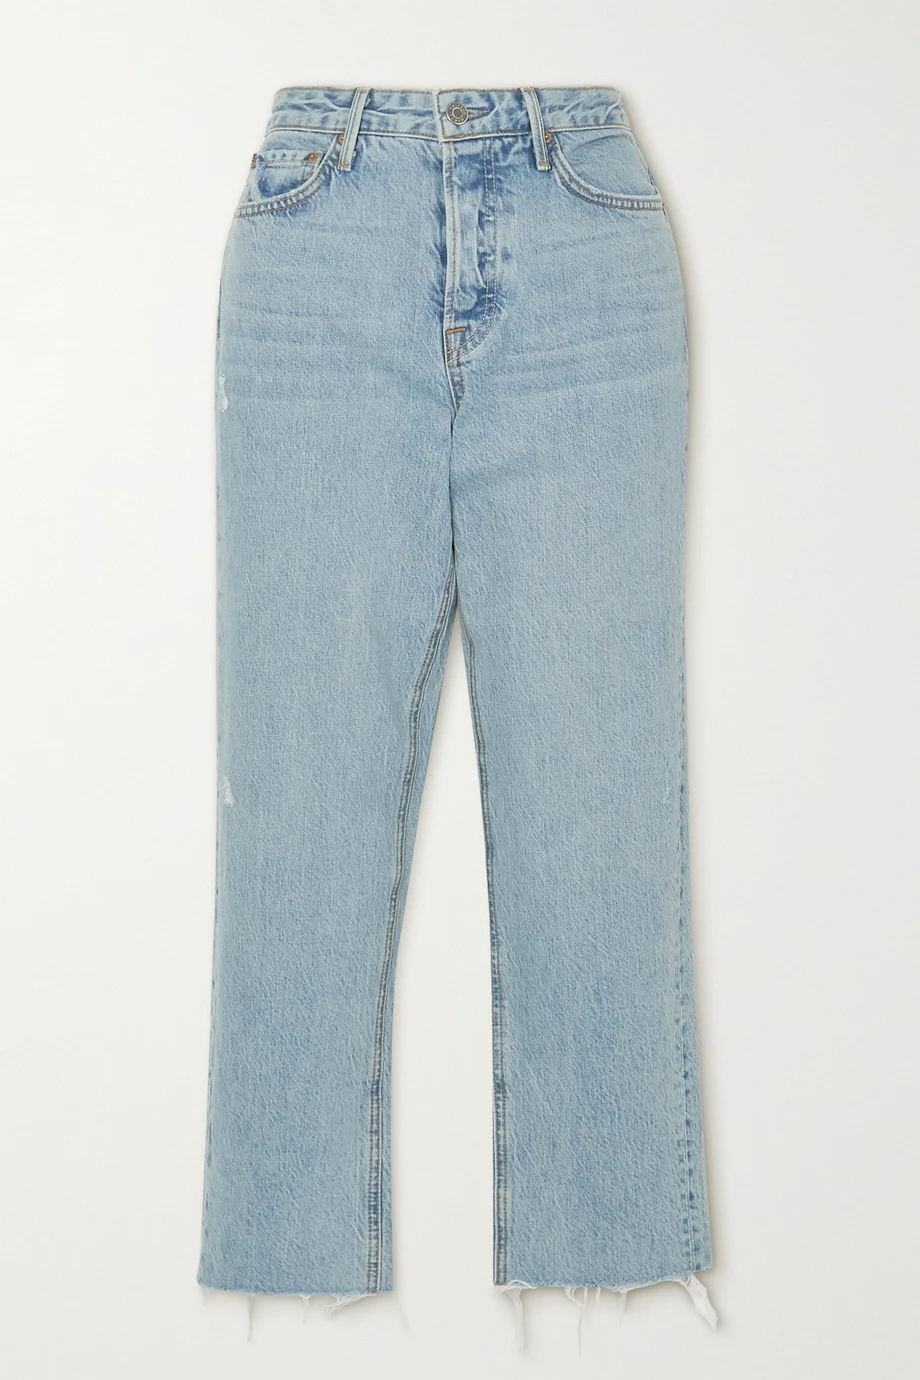 модные джинсы осень 2020 прямые голубые